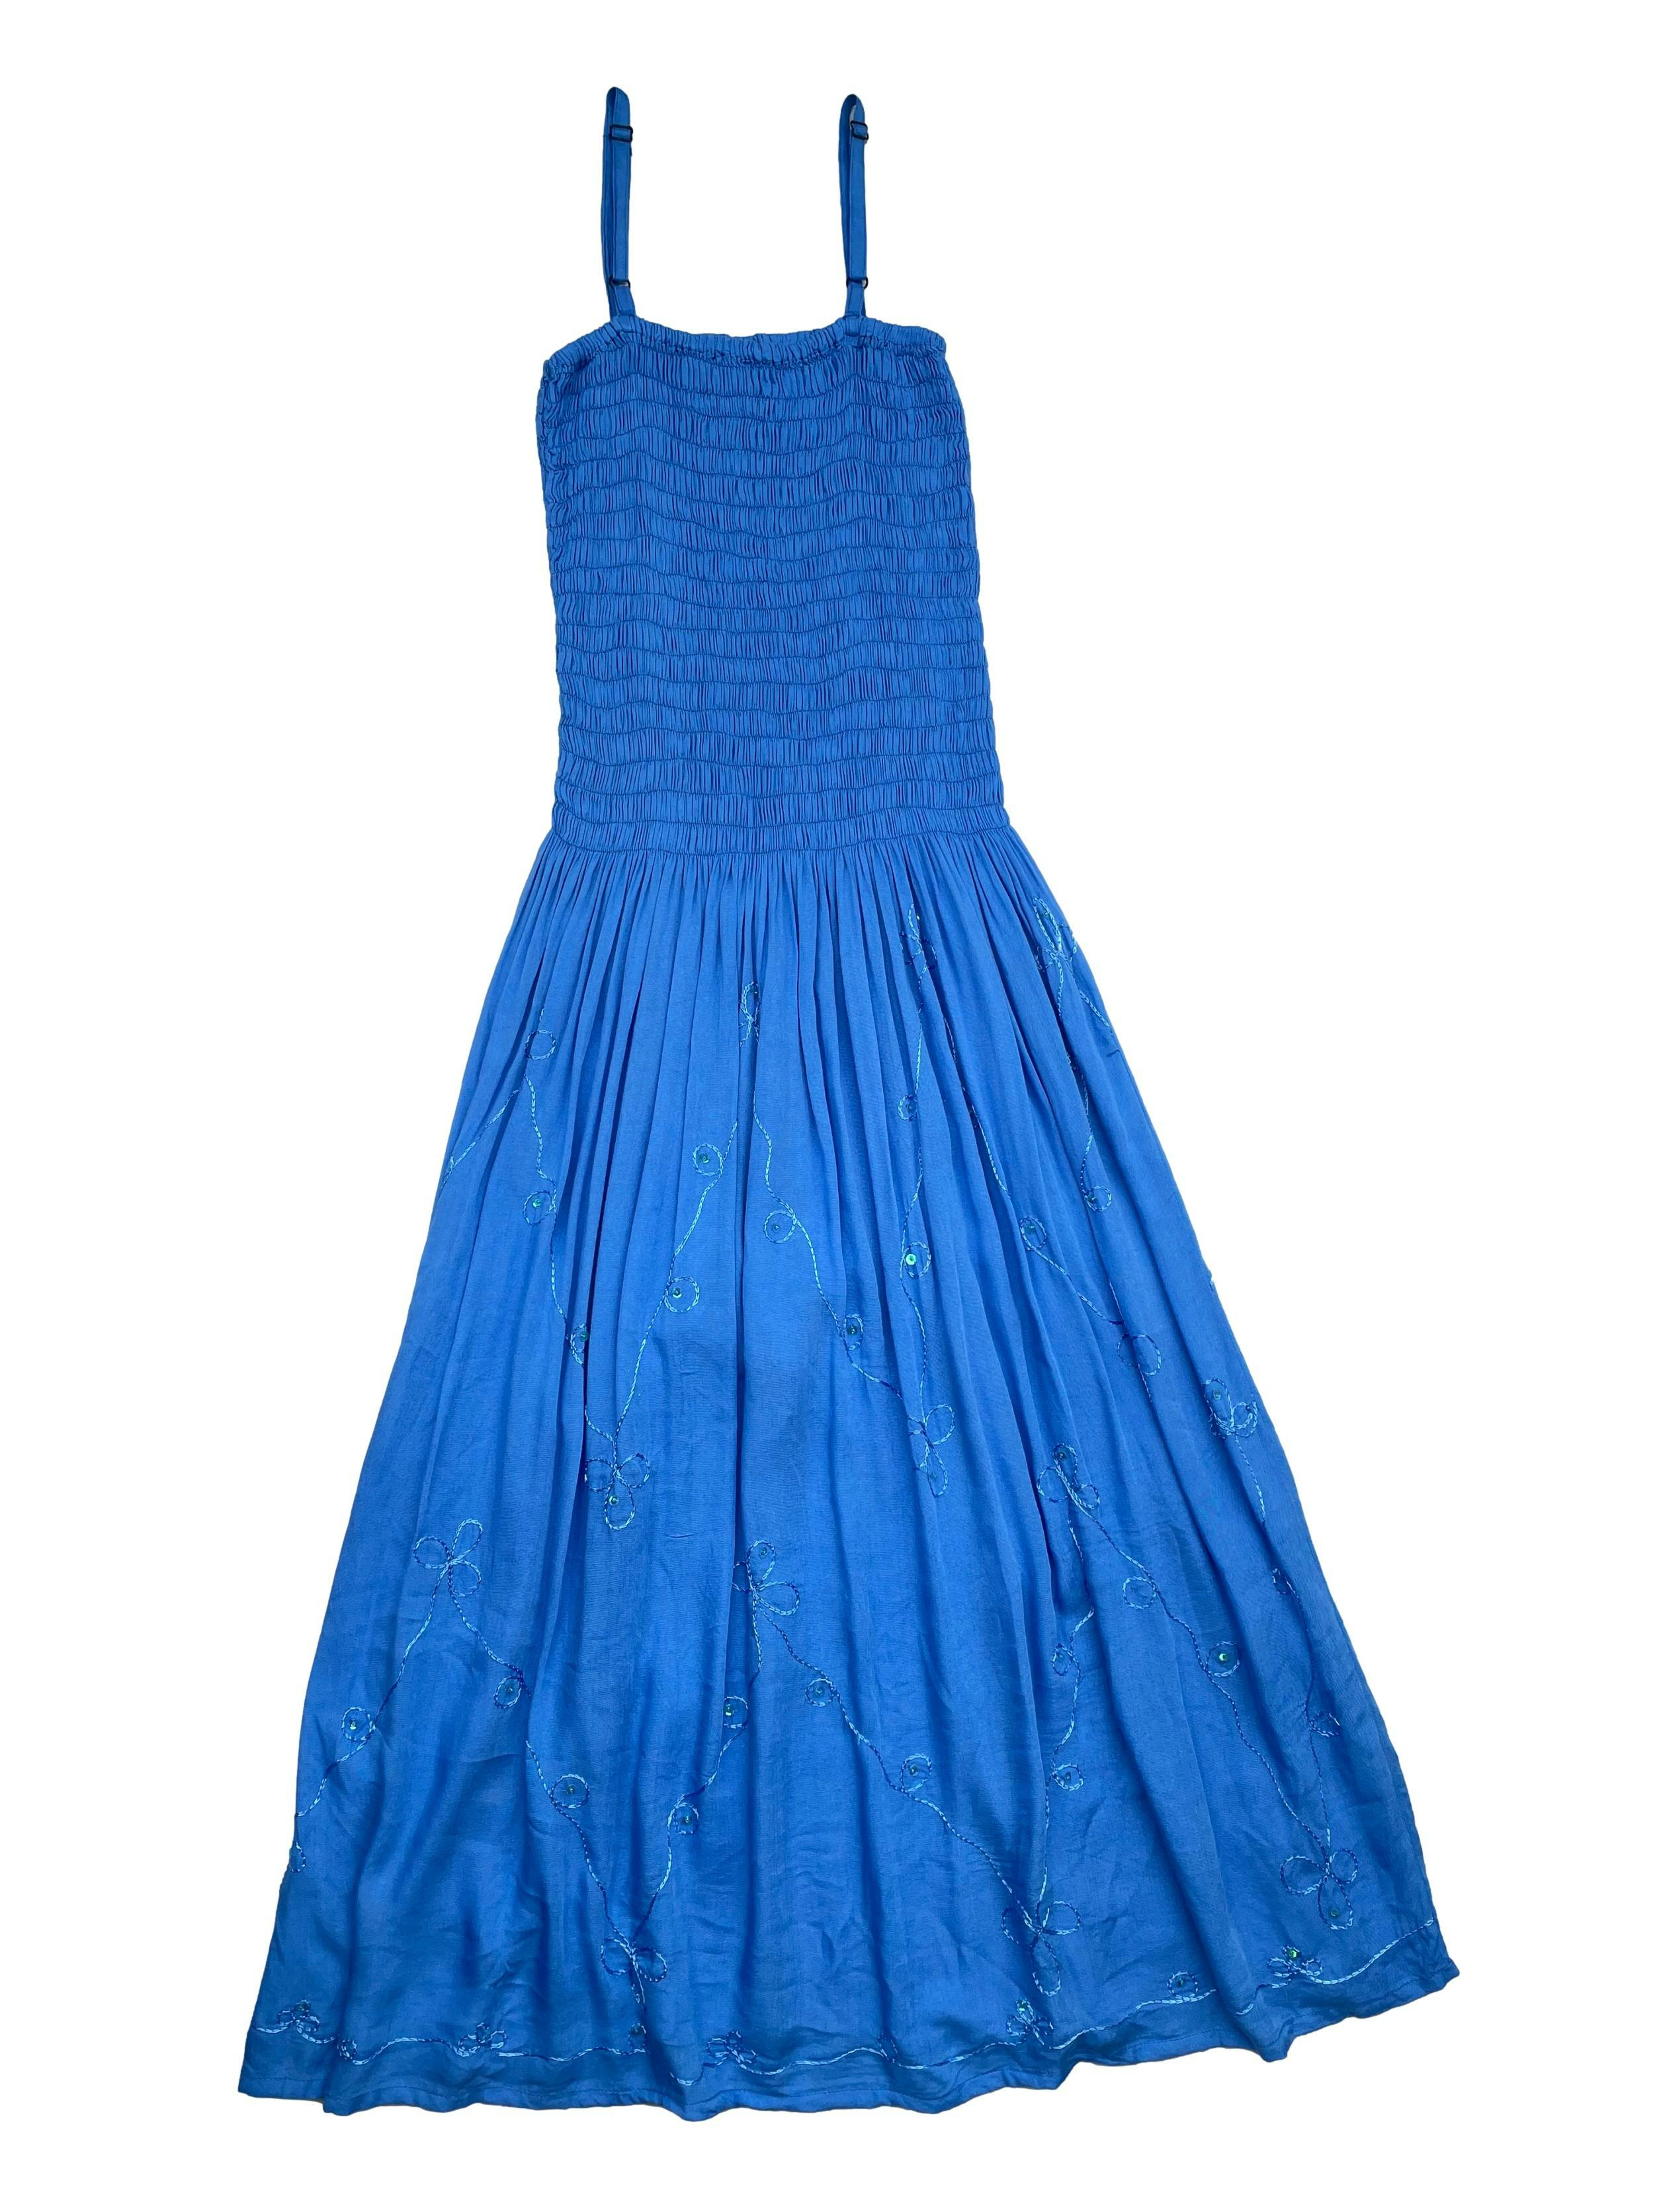 Vestido midi tela fresca azul, superior panal de abeja, detalles bordados y aplicaciones. Largo 105cm